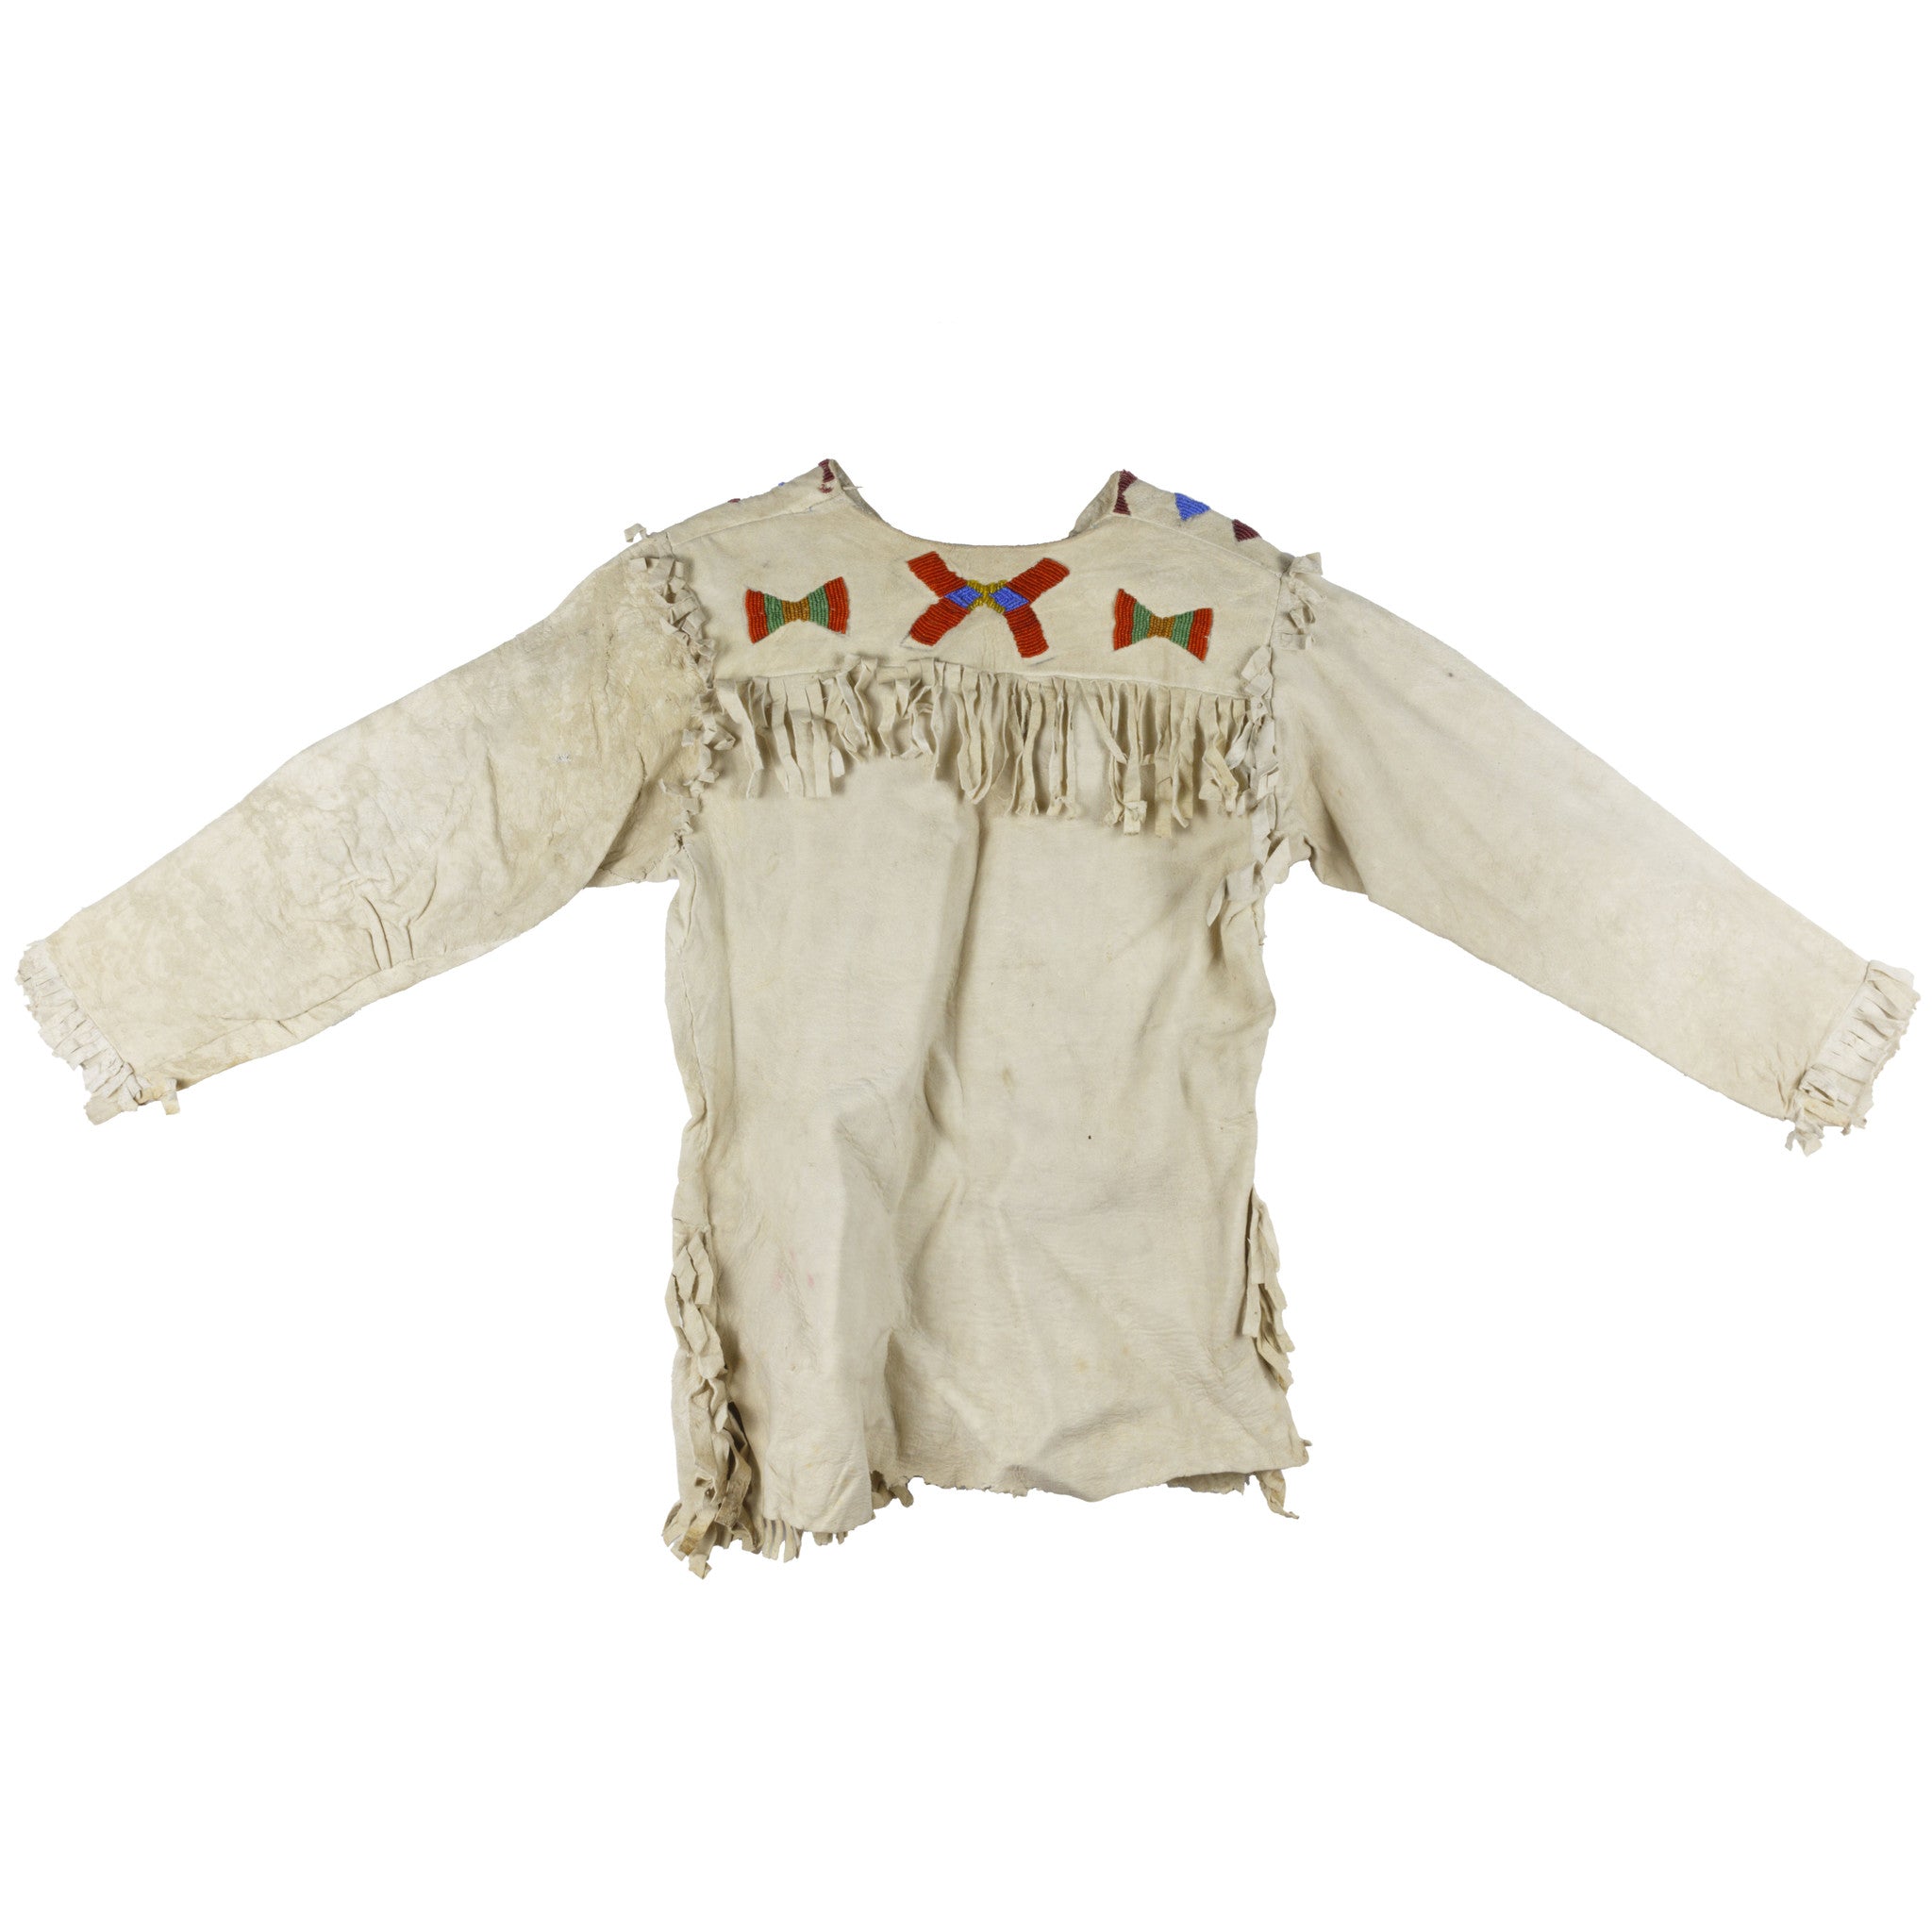 Nez Perce Child's Shirt